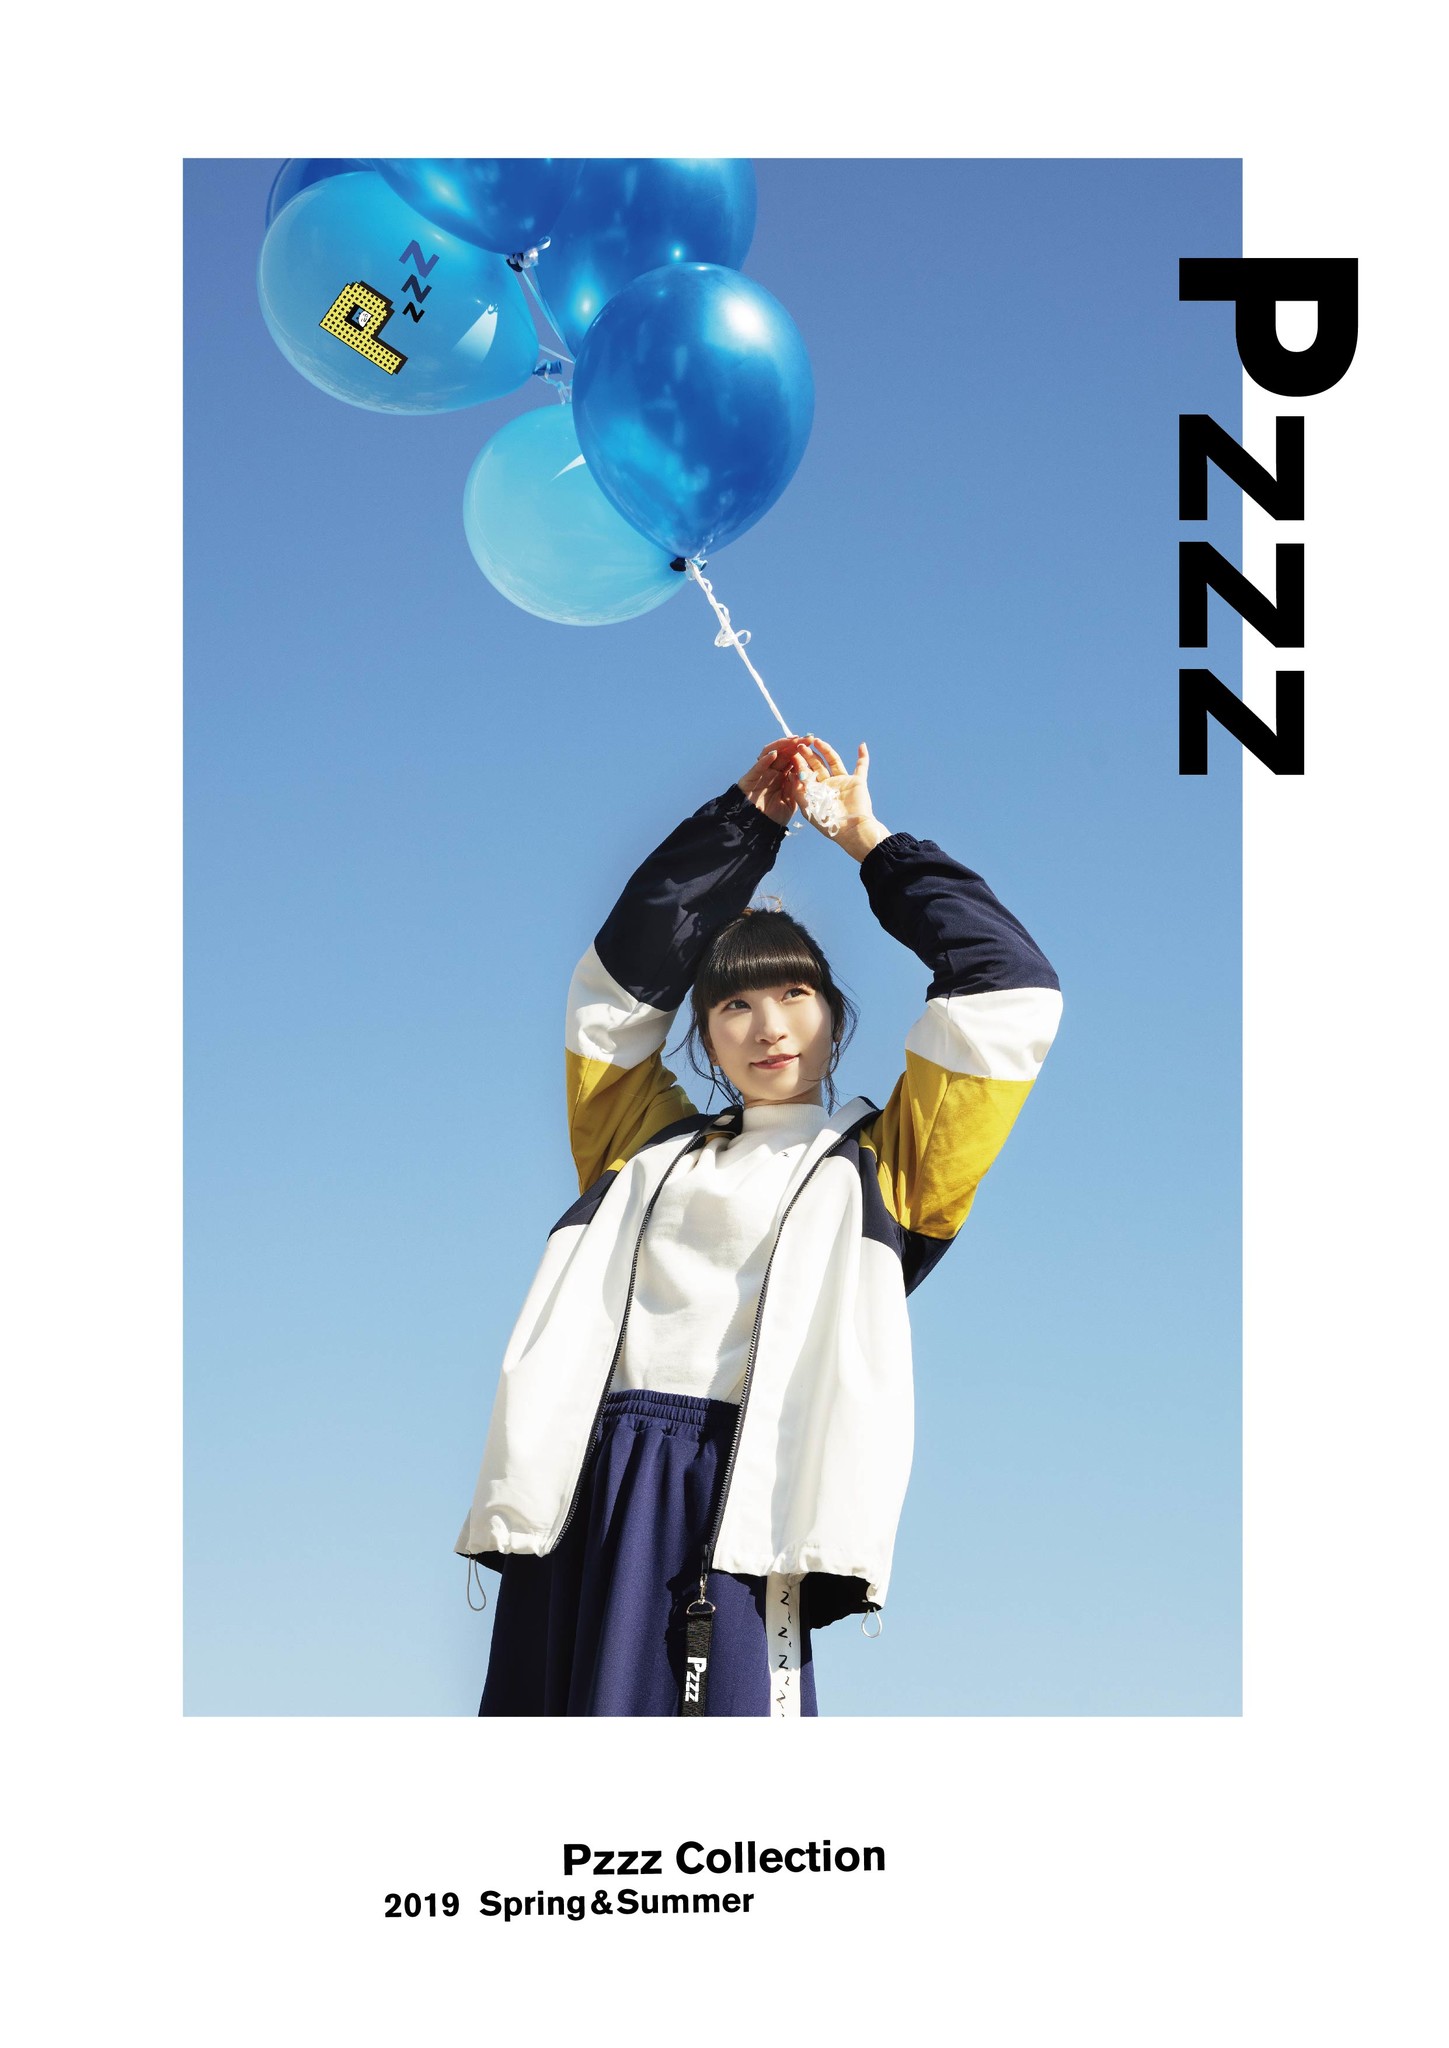 でんぱ組 Incのピンキー こと藤咲彩音 がデザイナーを務めるブランド Pzzz ピーゼット が新作を発表 株式会社ヒューマンフォーラムのプレスリリース